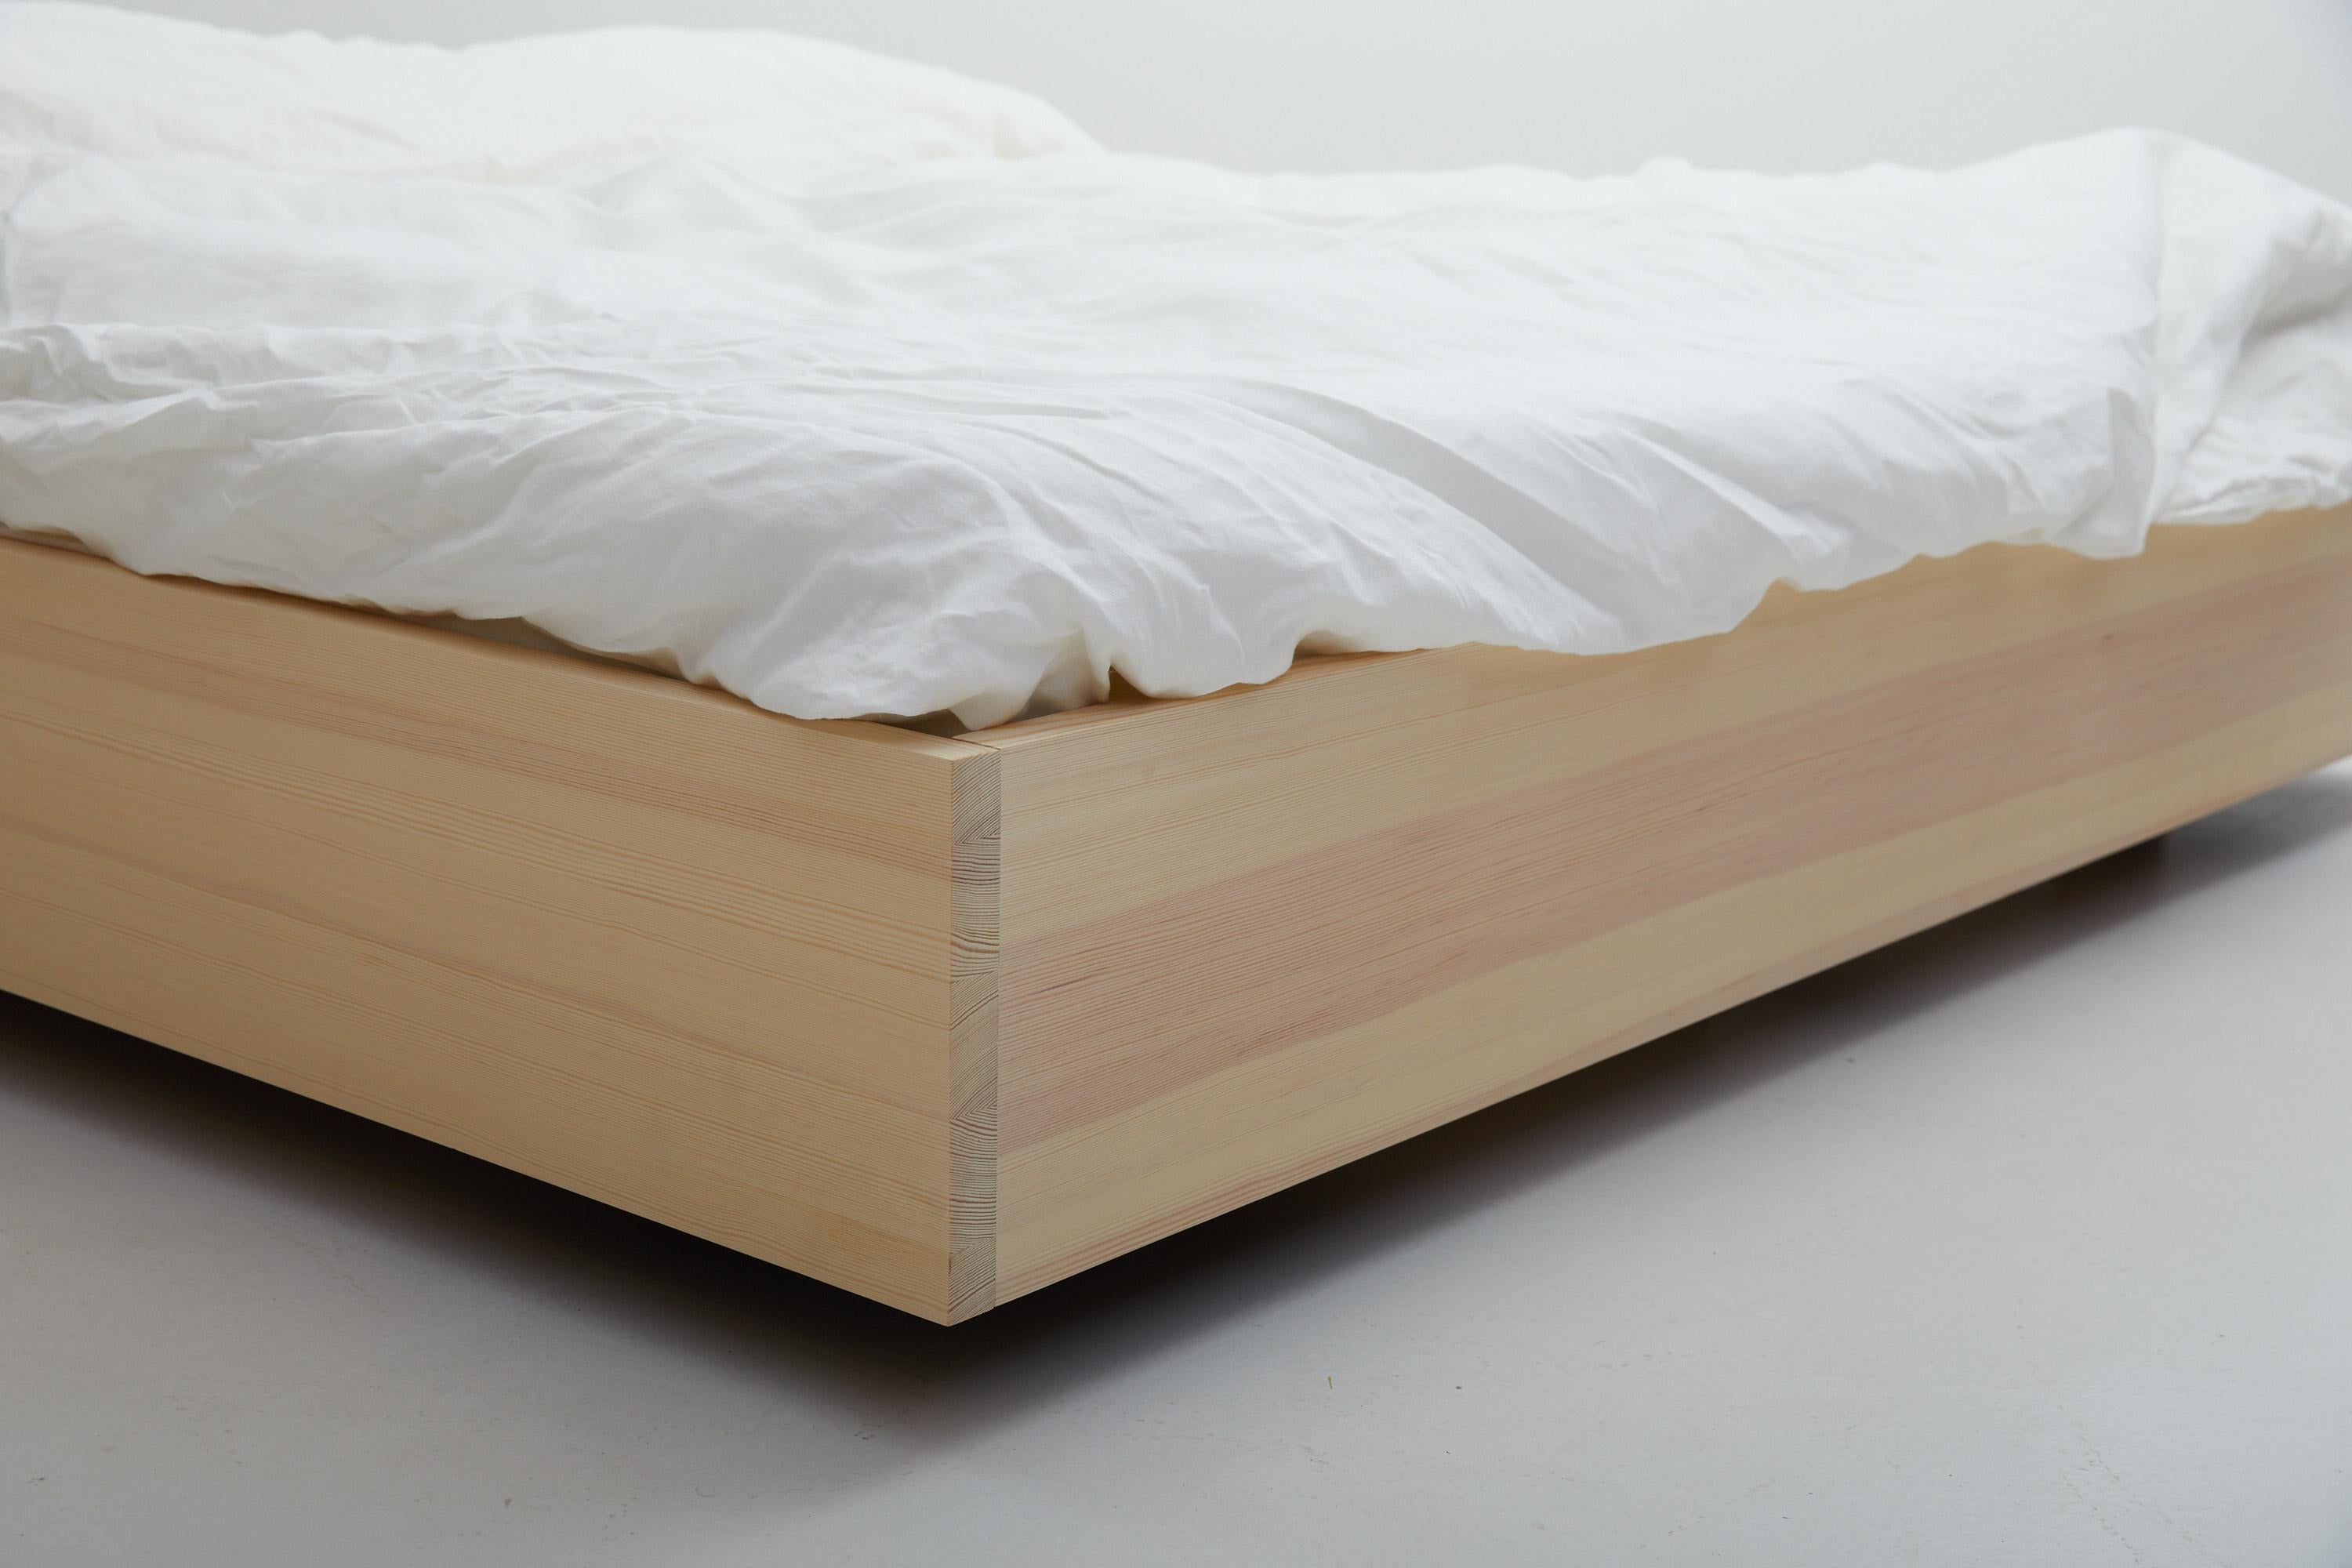 Le lit flottant

L'ébéniste Axel Wannberg s'est inspiré de l'impression de flotter librement pour concevoir le lit flottant, une pièce à part entière de la chambre à coucher en pin suédois massif.
Le bois de pin est un matériau magnifique et